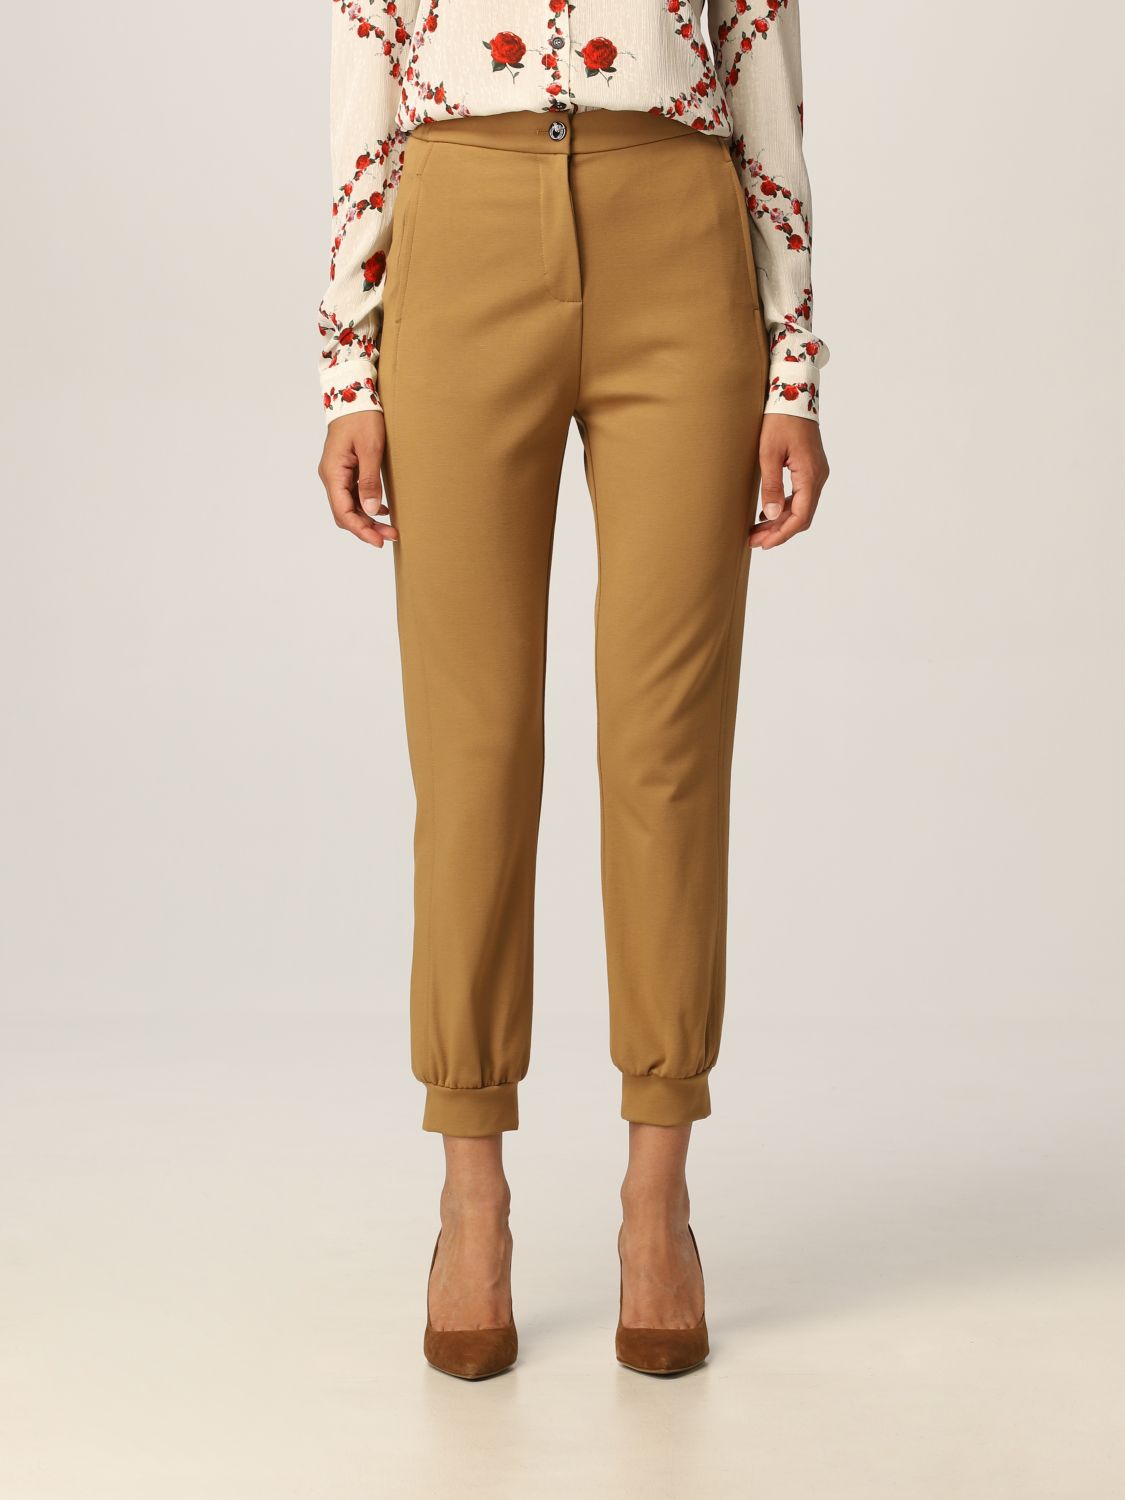 Pantalone cropped in viscosa stretch Giglio.com Donna Abbigliamento Pantaloni e jeans Pantaloni Pantaloni stretch 